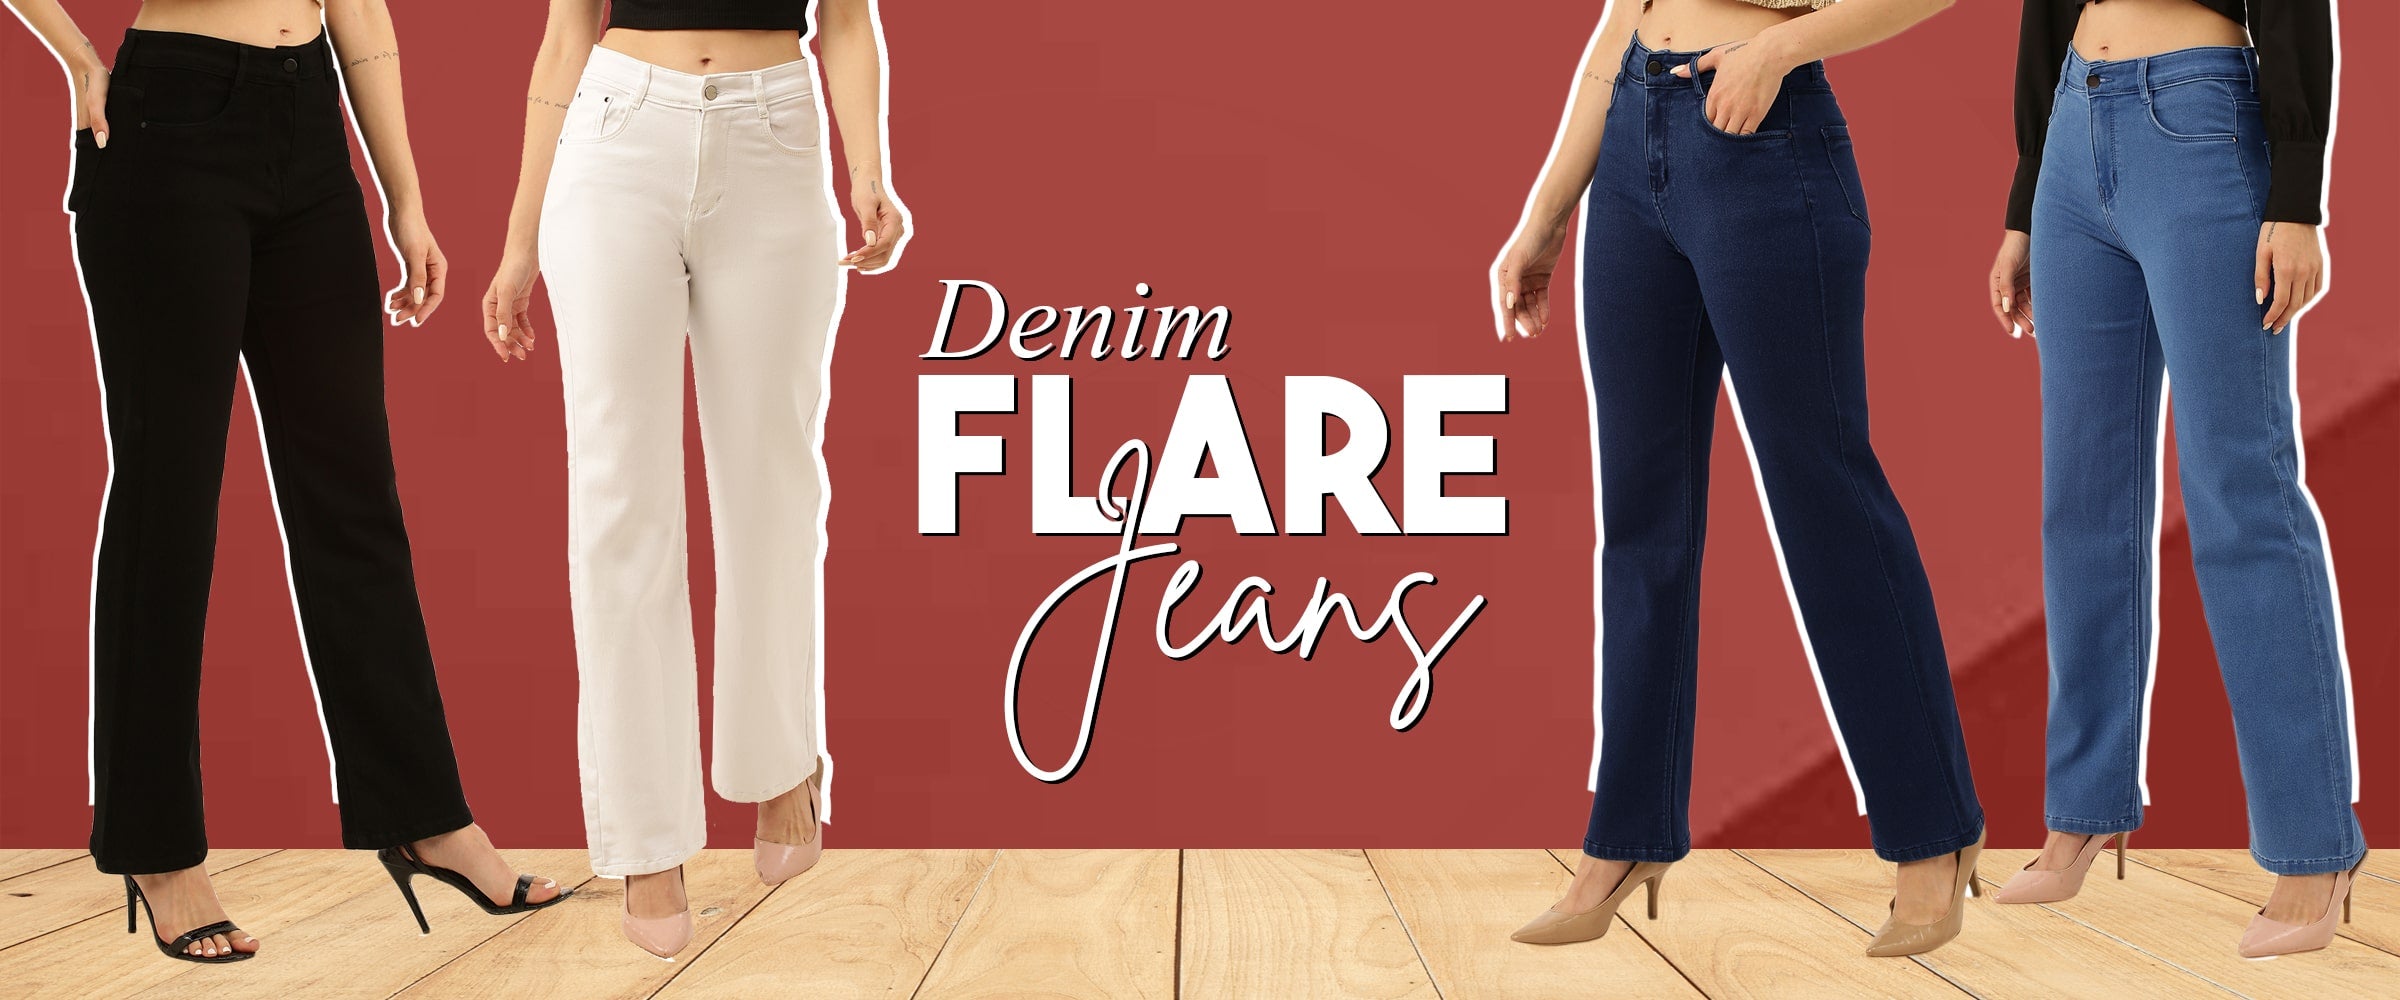 Frontwalk Denim Flare Pants for Women High Waist Stretchy Jeans Bell Bottoms  - Walmart.com